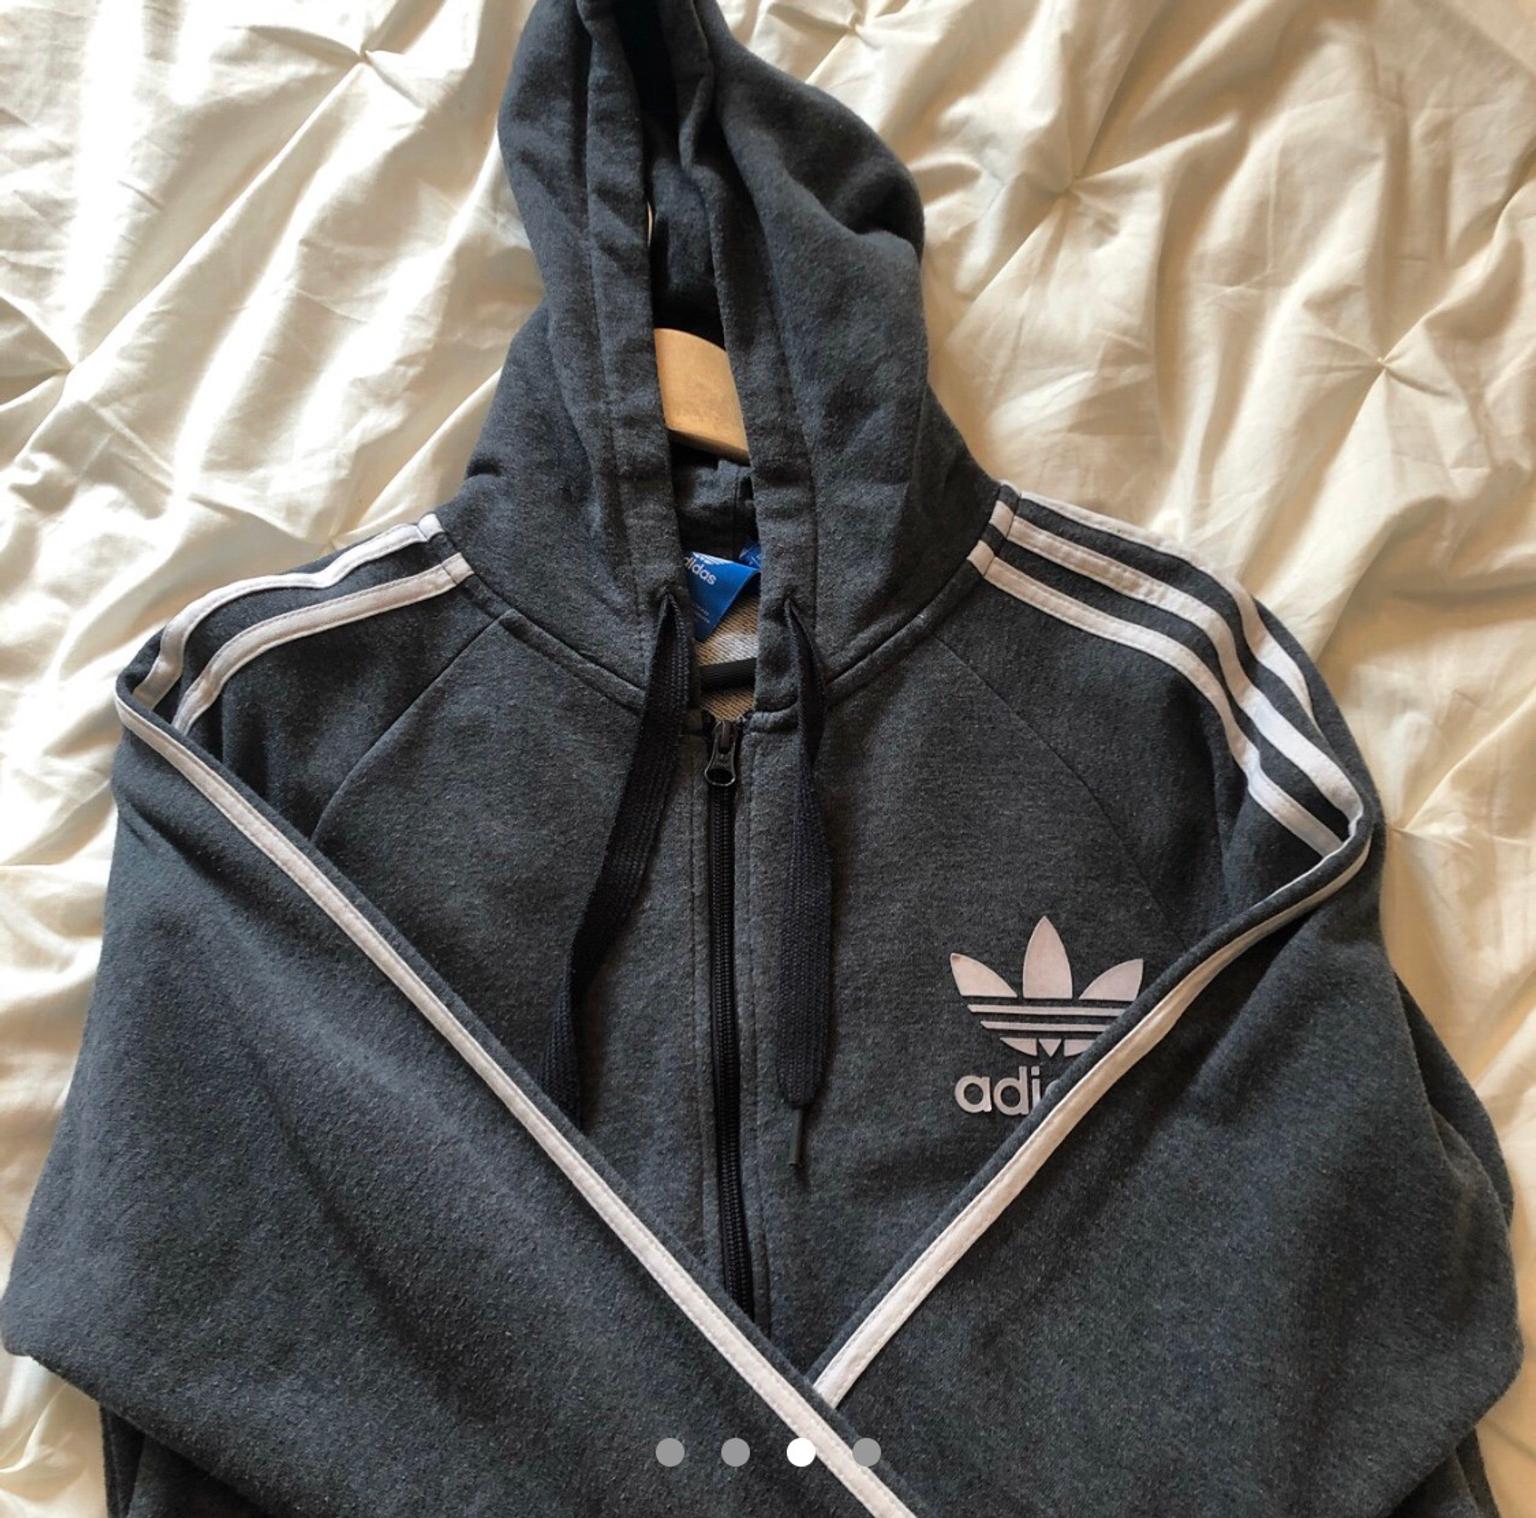 adidas hoodie dark grey